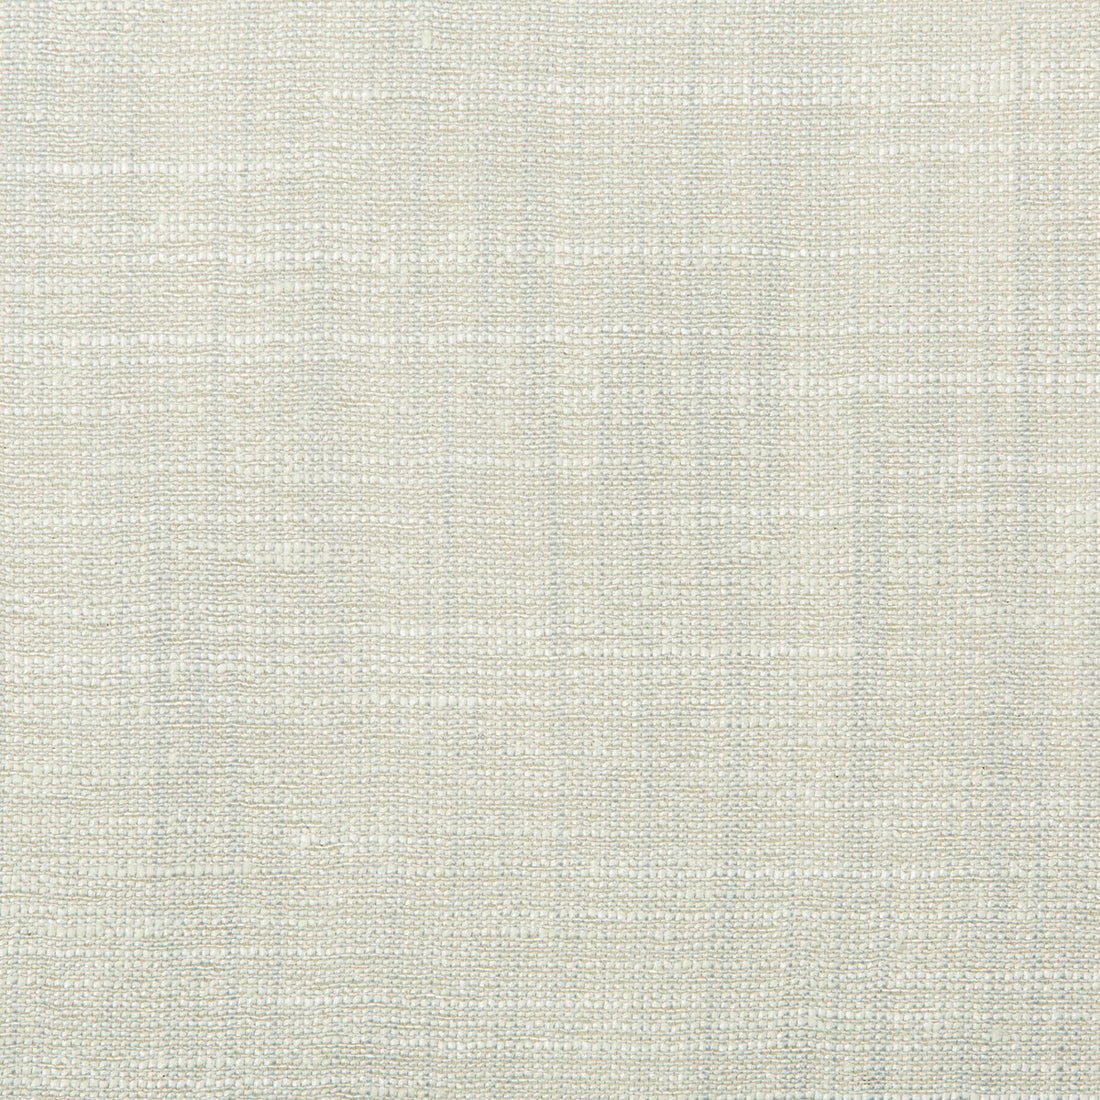 Kravet Basics fabric in 4664-13 color - pattern 4664.13.0 - by Kravet Basics